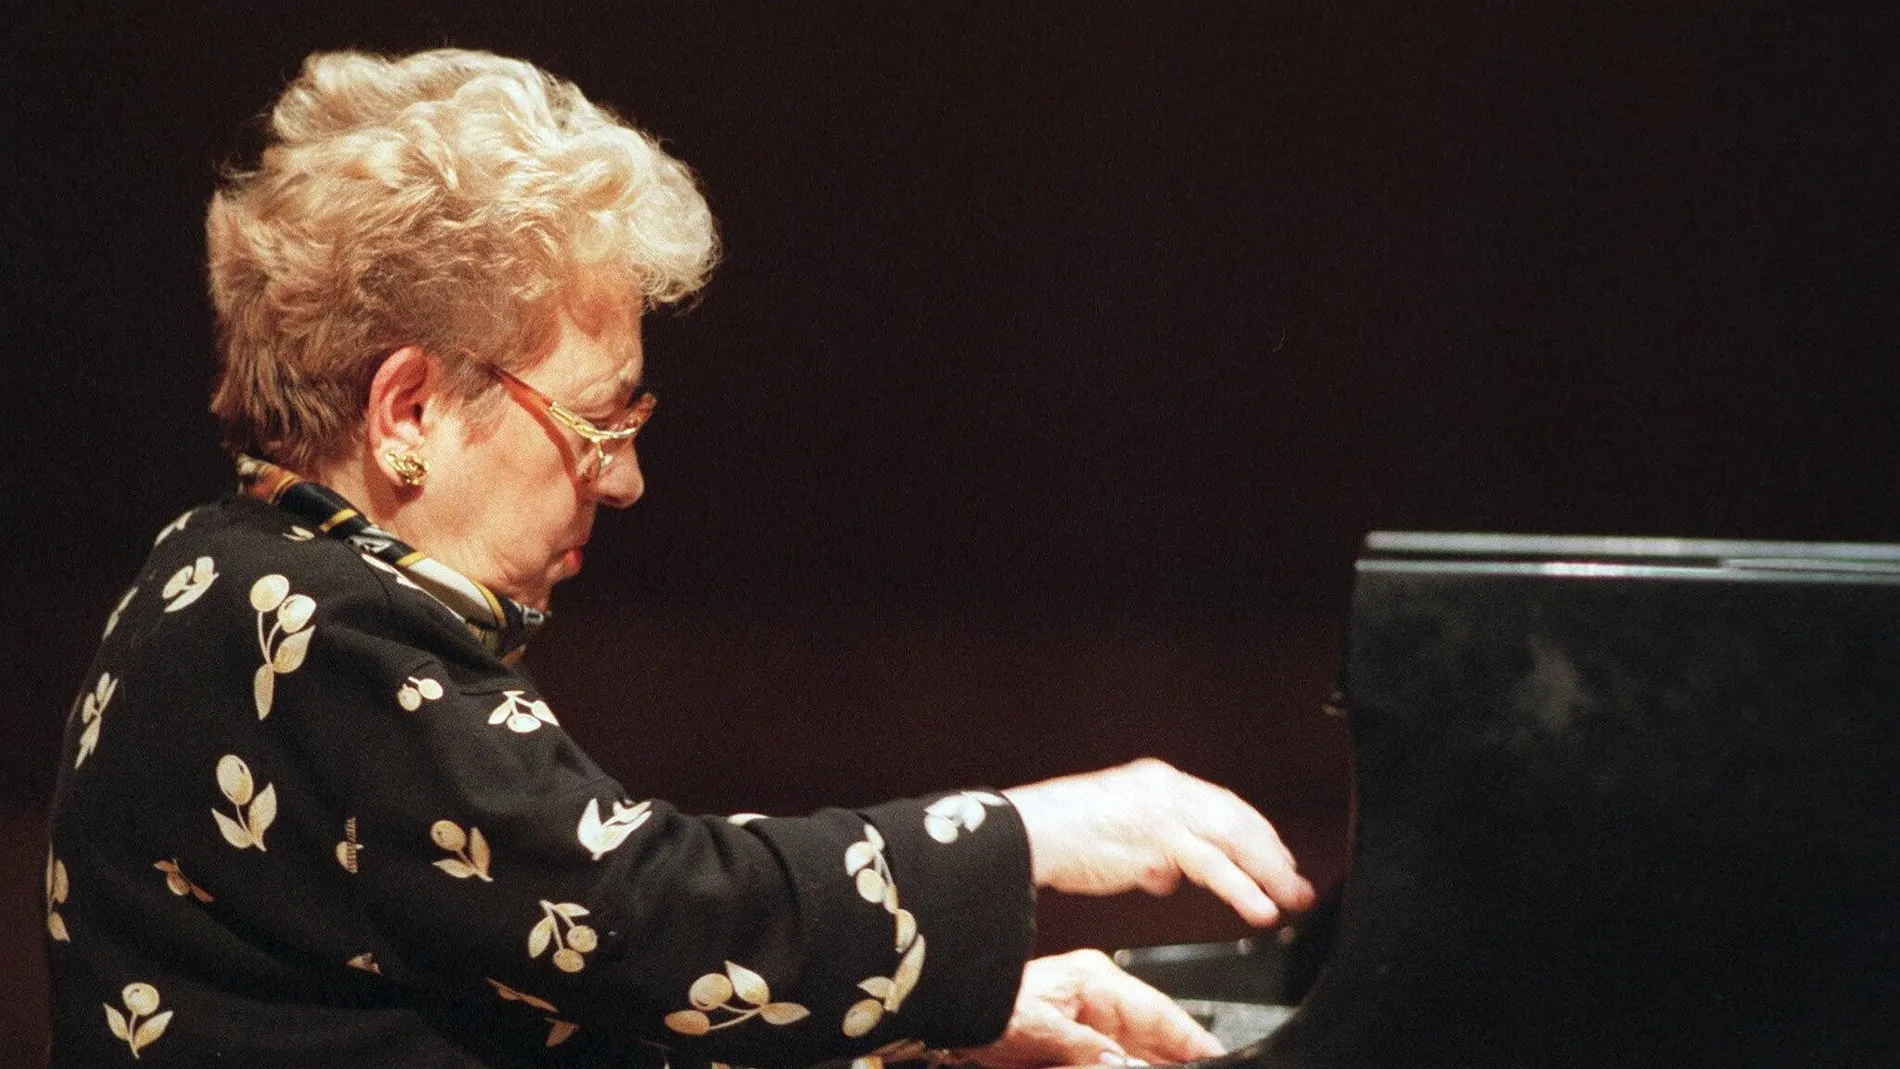 Fotografia de archivo tomada el 13 de septiembre de 1996 de la pianista Alicia de Larrocha